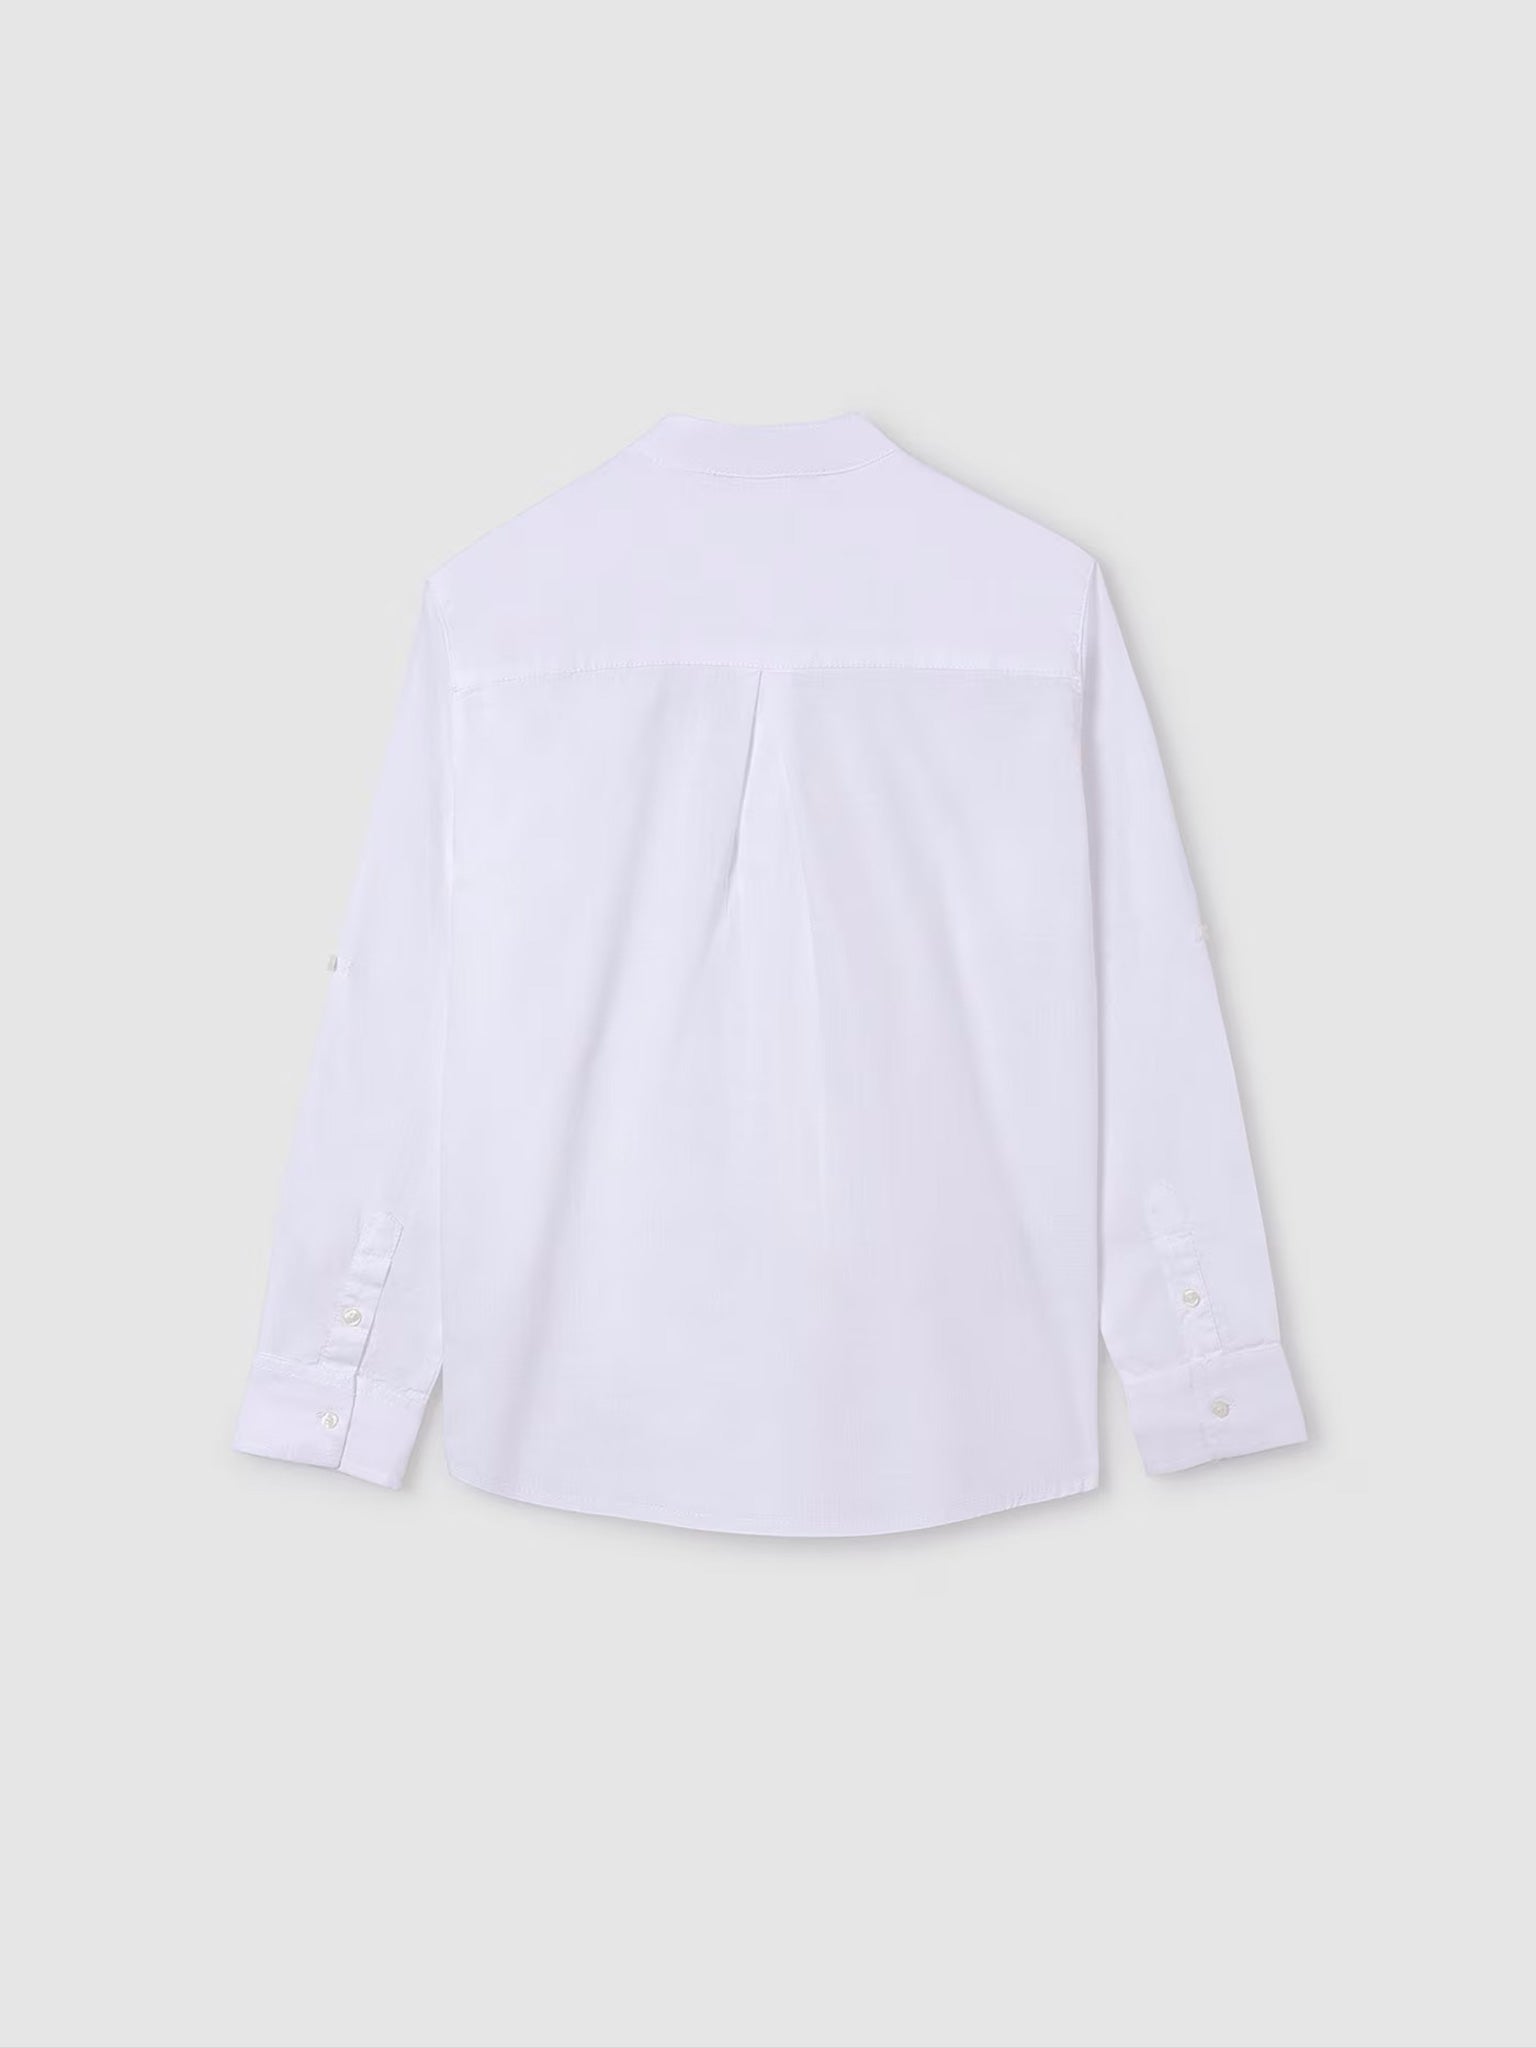 Εφηβικό πουκάμισο μάο Better Cotton 24-06121-043 | 24-06121-043